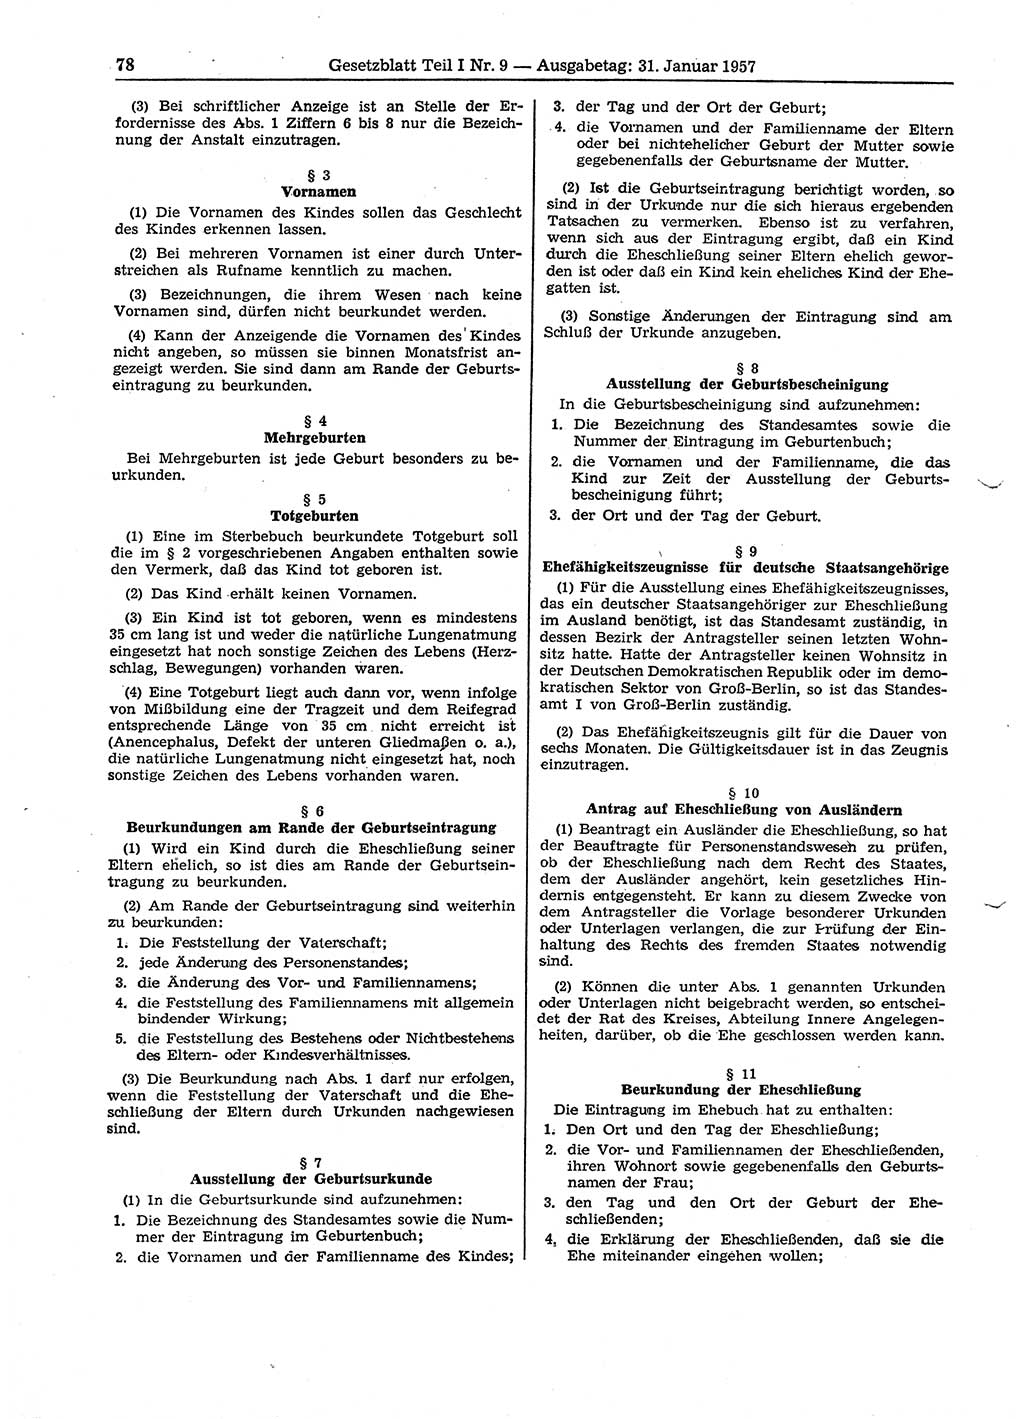 Gesetzblatt (GBl.) der Deutschen Demokratischen Republik (DDR) Teil Ⅰ 1957, Seite 78 (GBl. DDR Ⅰ 1957, S. 78)